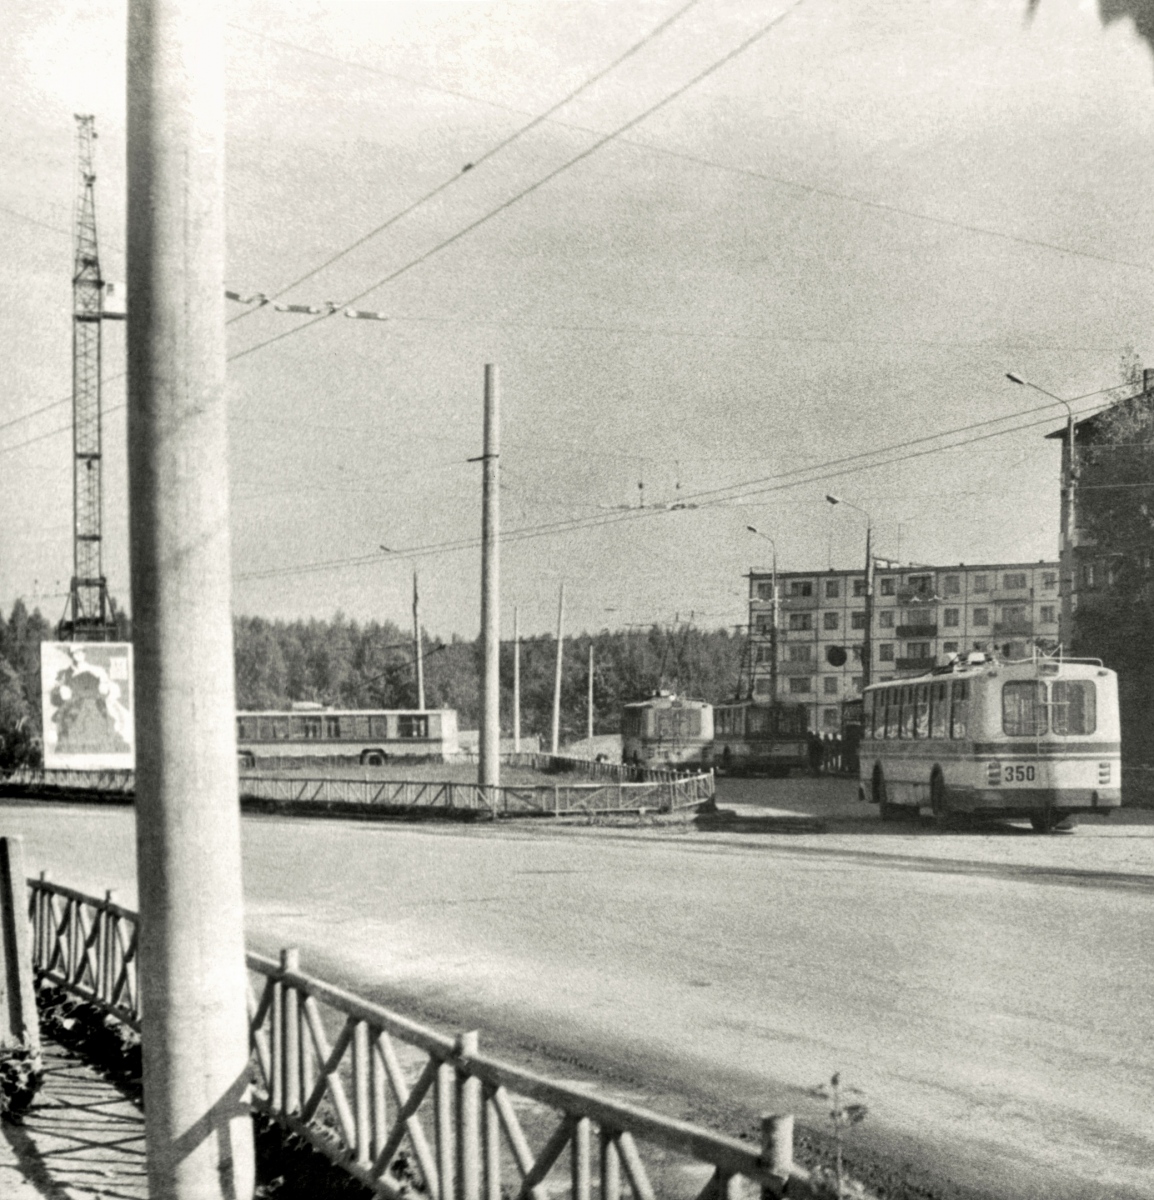 Brjanszk, ZiU-682V — 350; Brjanszk — Historical photos; Brjanszk — Terminus stations